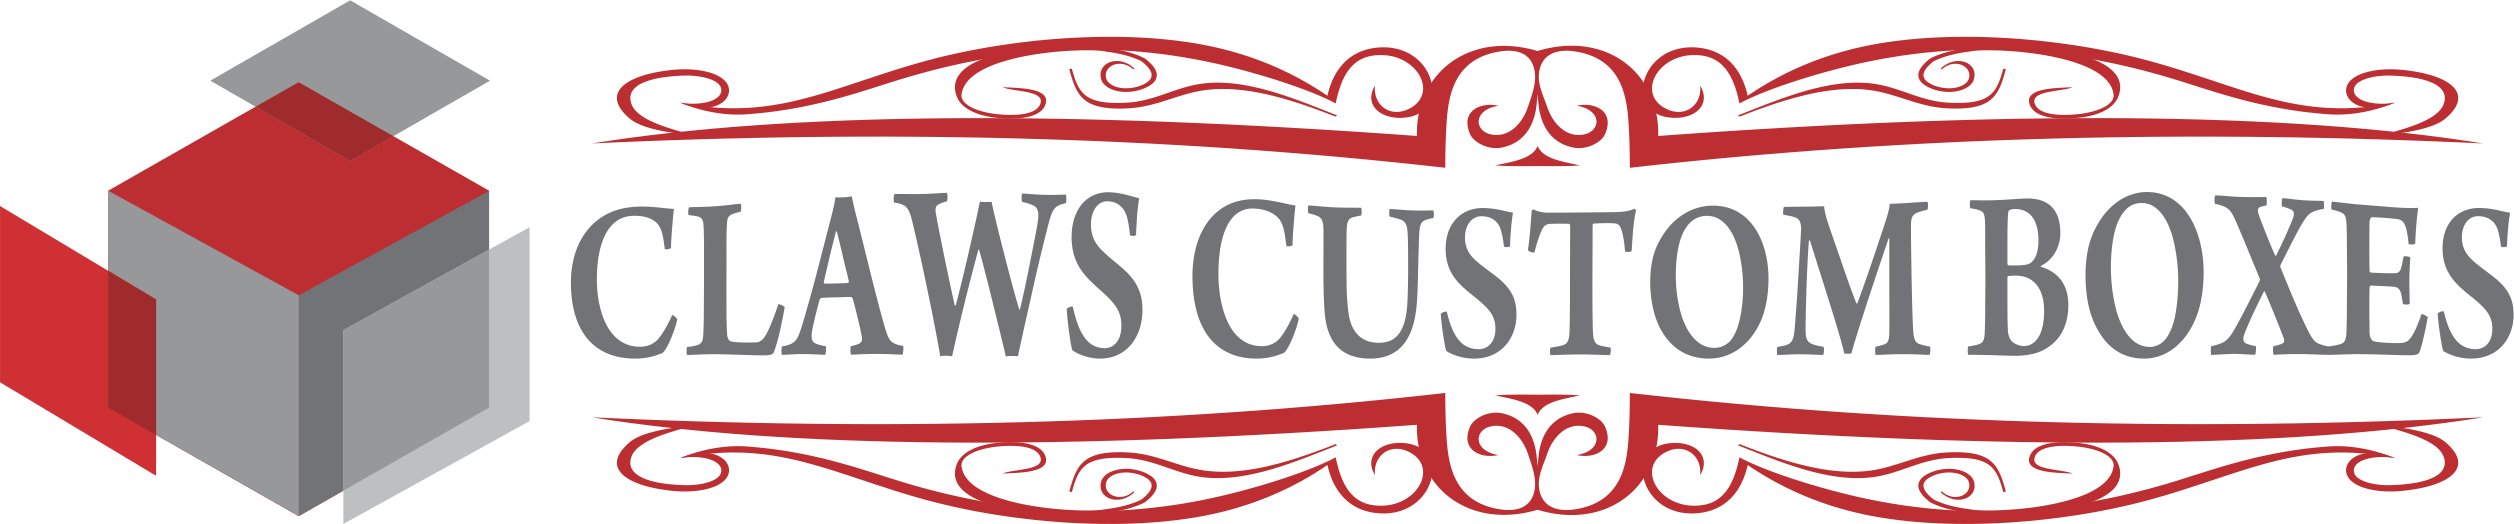 Claws Custom Boxes LLC Logo